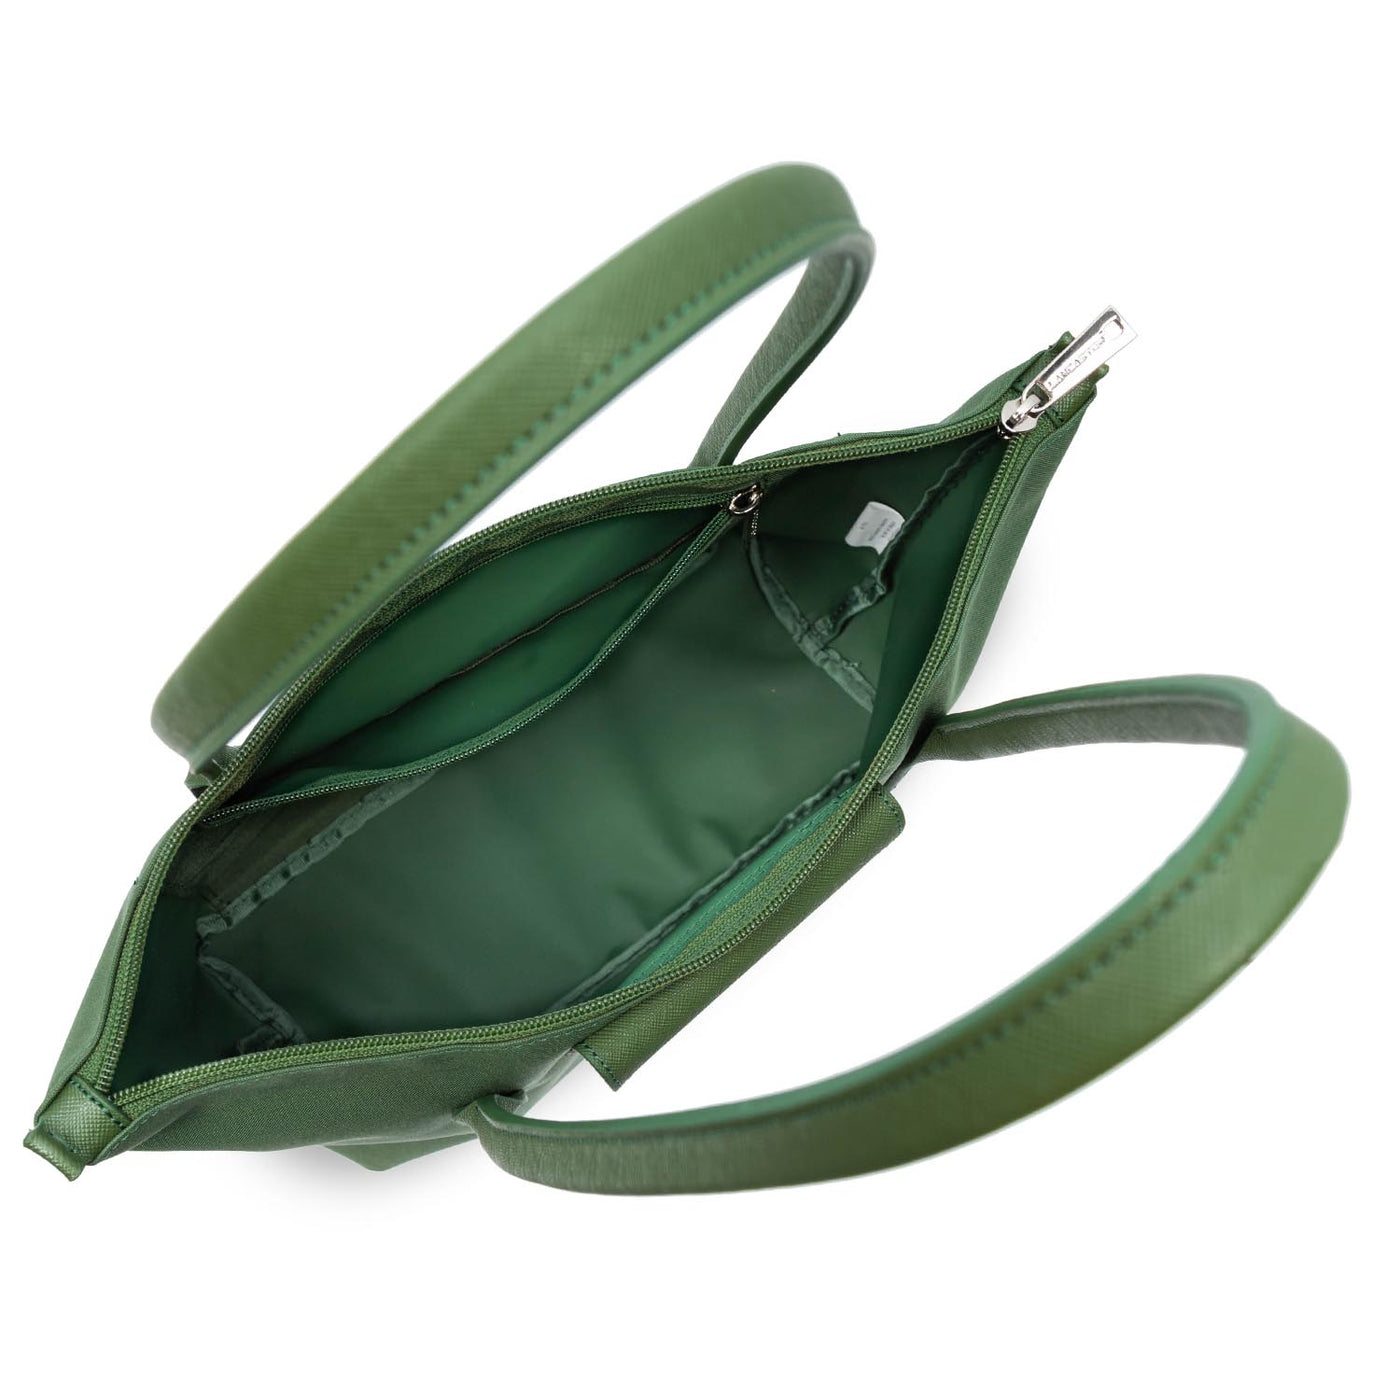 sac cabas épaule - smart kba #couleur_vert-pin